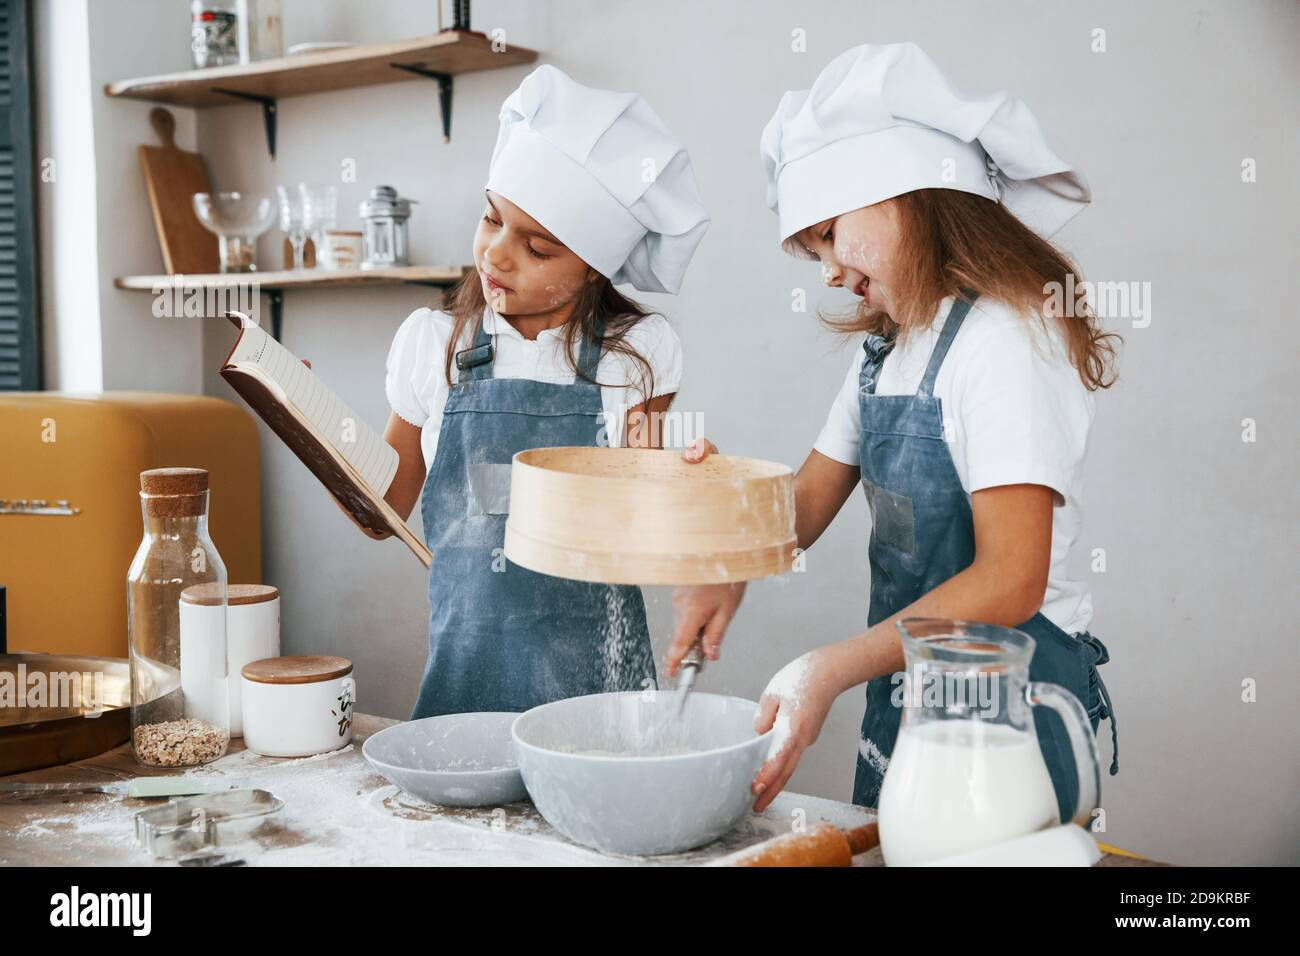 Dos niñas en uniforme azul chef preparando la comida usando un tamiz en la cocina y leyendo el libro de recibos Foto de stock